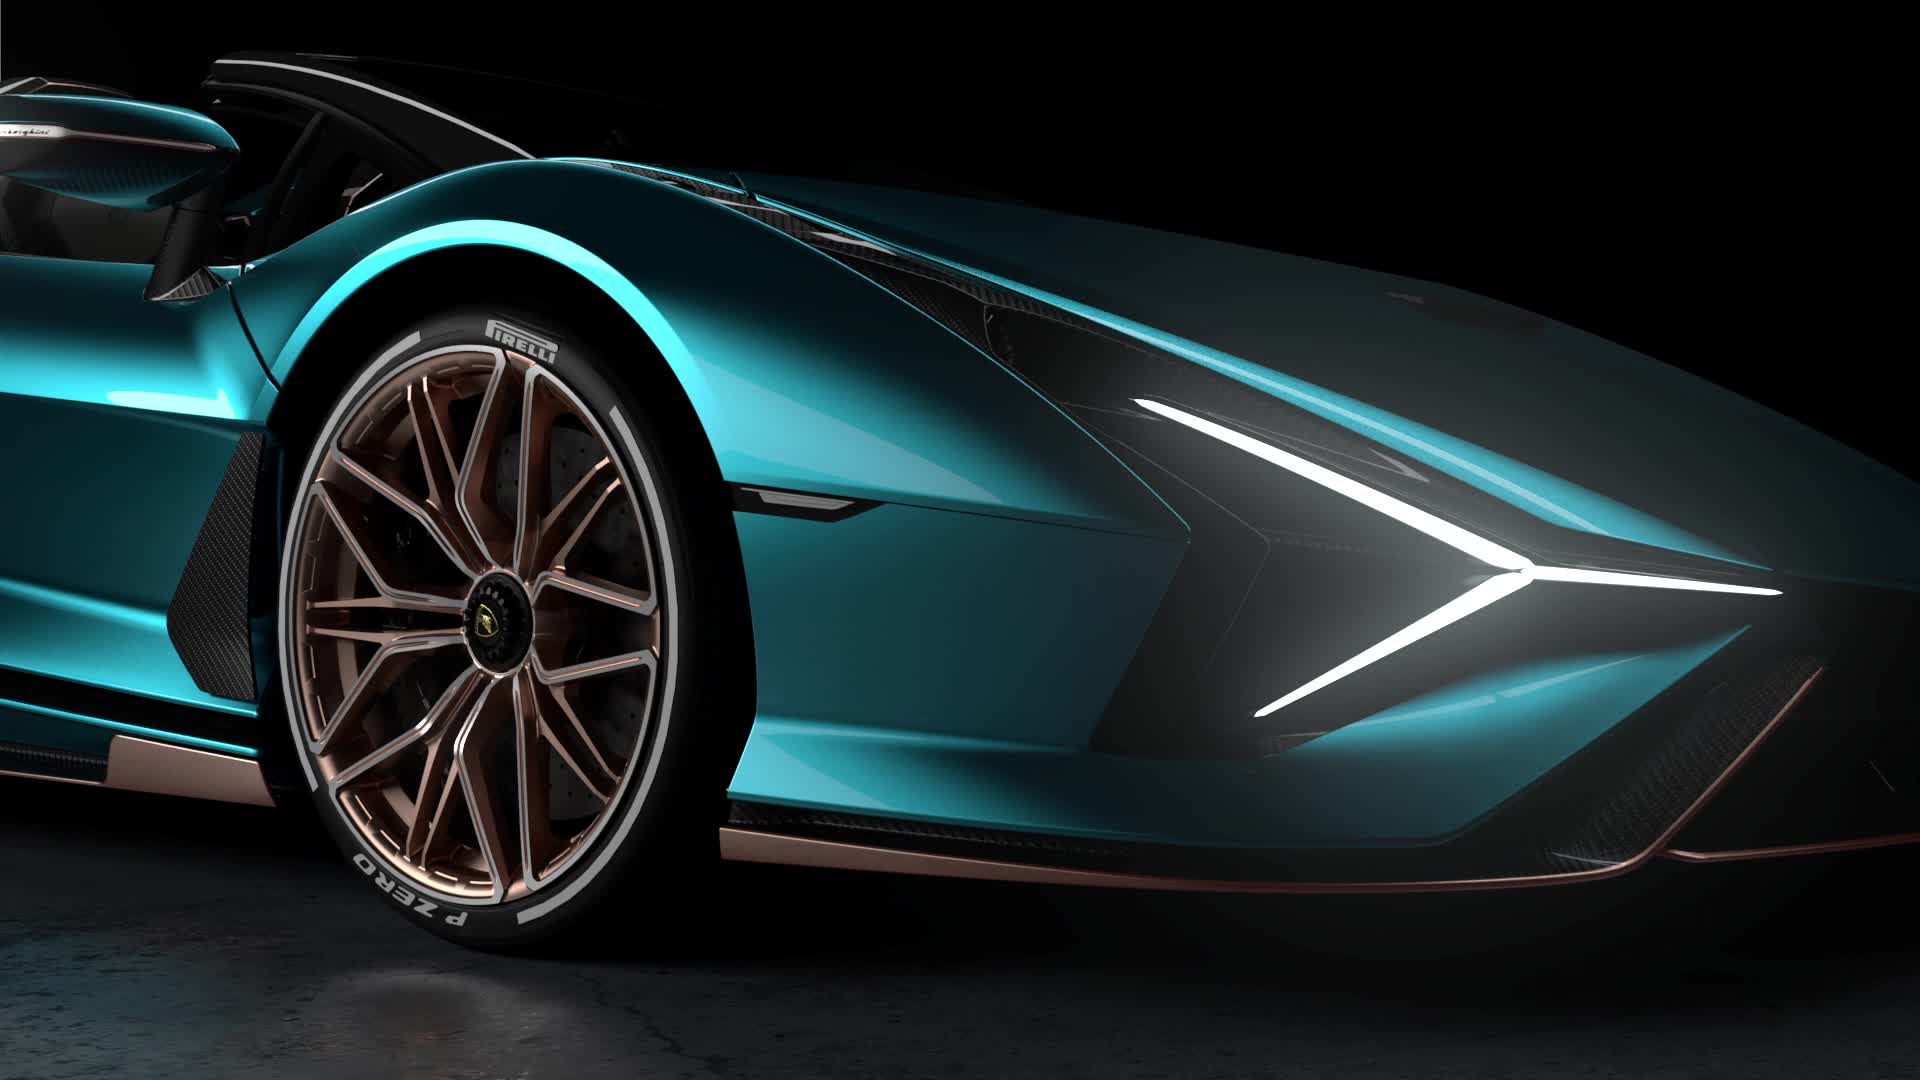 Ngất ngây với Lamborghini Sián Roadster - chiếc xe thể thao đỉnh cao mang phong cách của Italia. Với kiểu dáng cao cấp, đẳng cấp và công nghệ tiên tiến, chiếc Sián Roadster sẽ đưa bạn vào một trải nghiệm tuyệt vời và không thể nào quên. Hãy khám phá những hình ảnh đặc sắc của Lamborghini Sián Roadster cùng chúng tôi. 